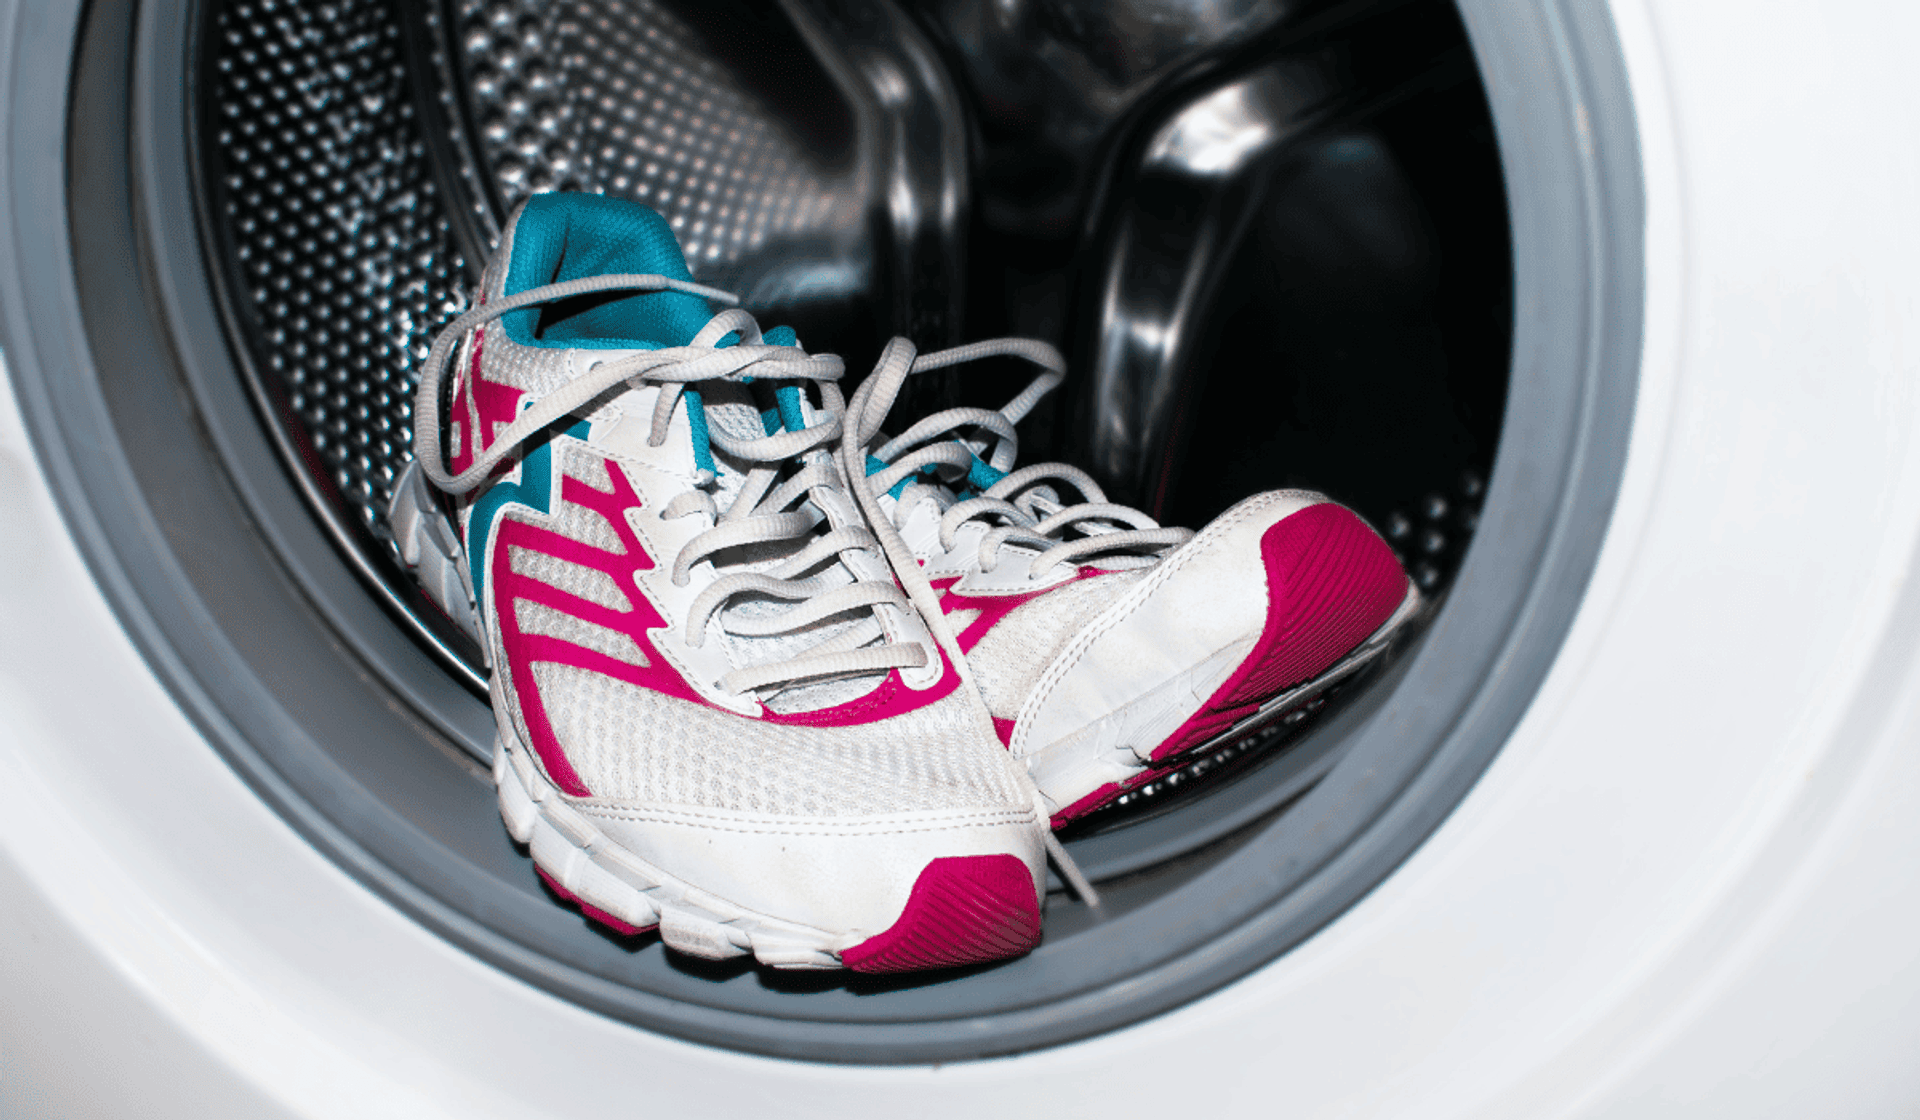 Pranie białych butów w pralce - czy wiesz, jak zrobić to właściwie?